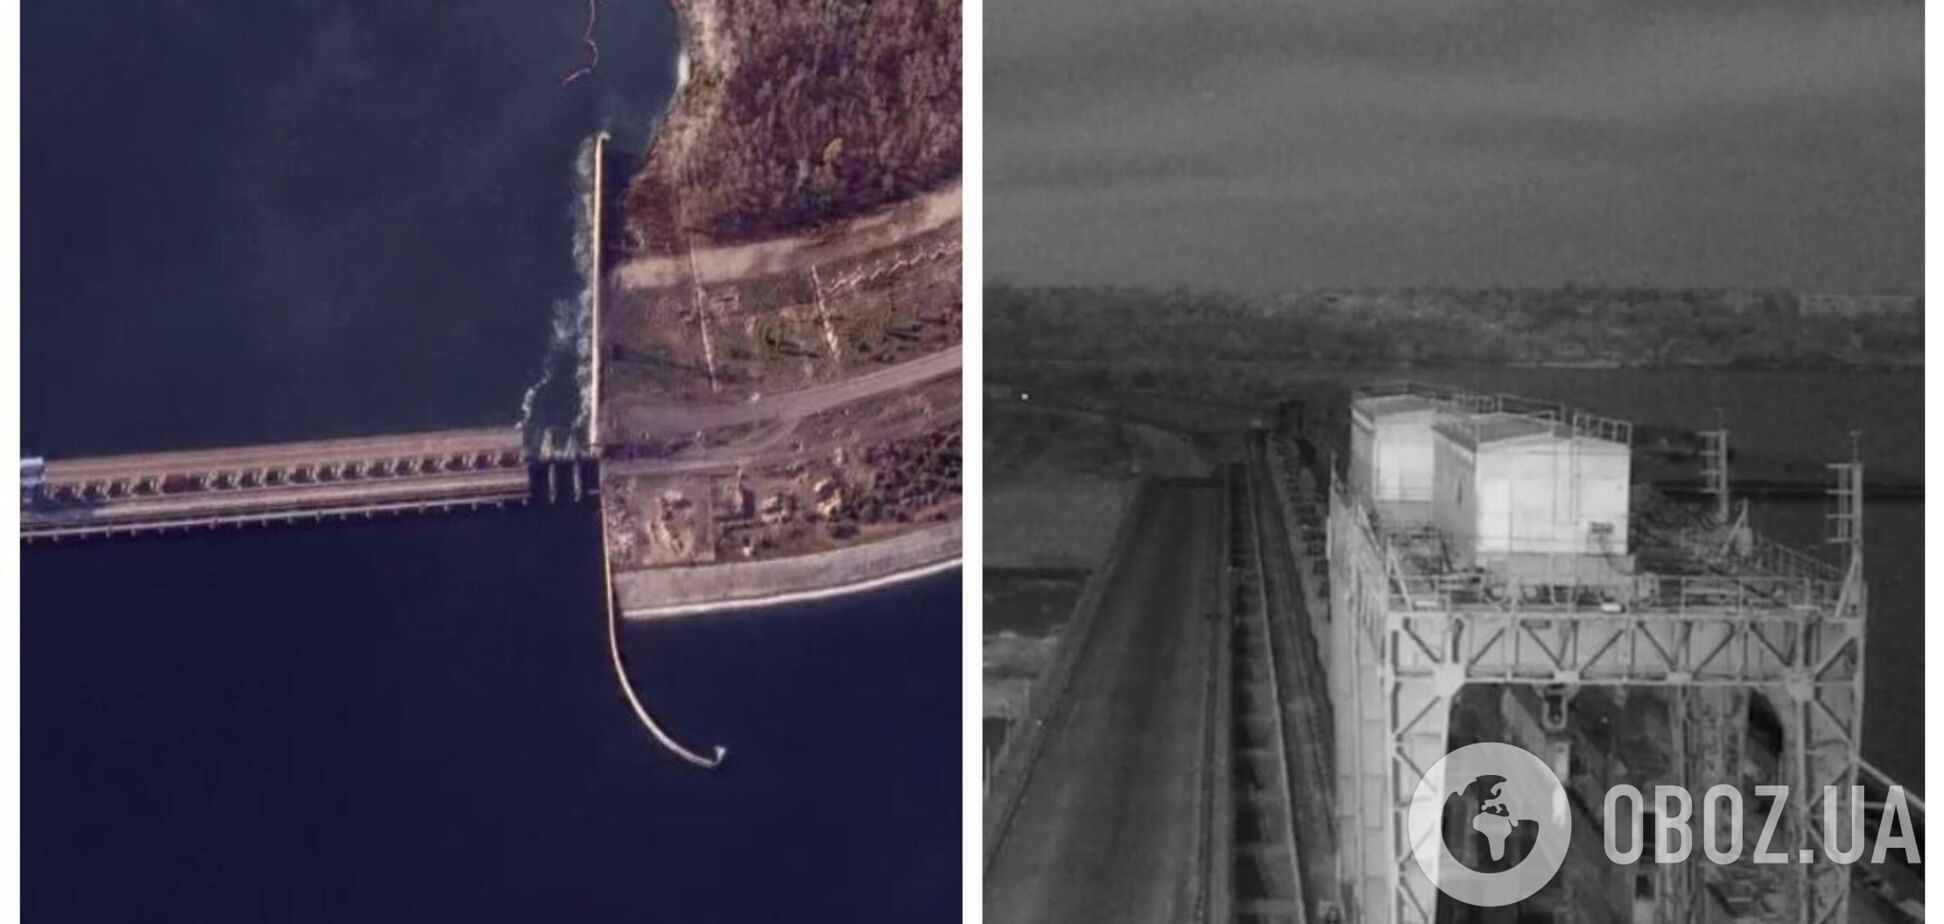 Взрыв был очень сильным: российские пропагандисты показали подрыв моста на Каховской ГЭС, спутав его с Антоновским. Видео